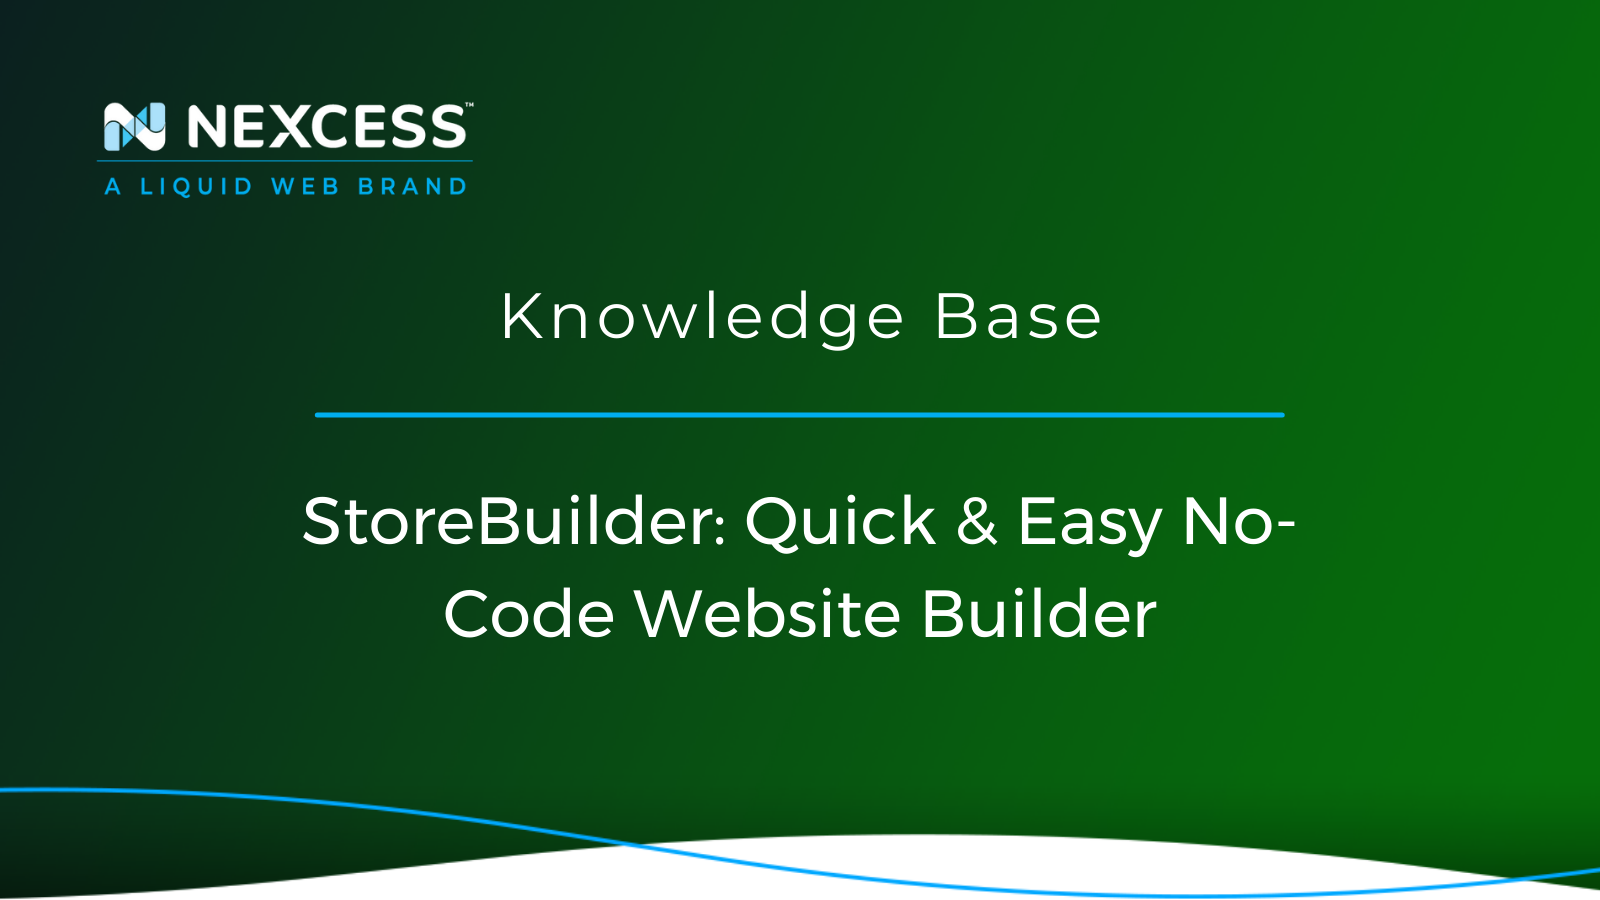 StoreBuilder: Quick & Easy No-Code Website Builder